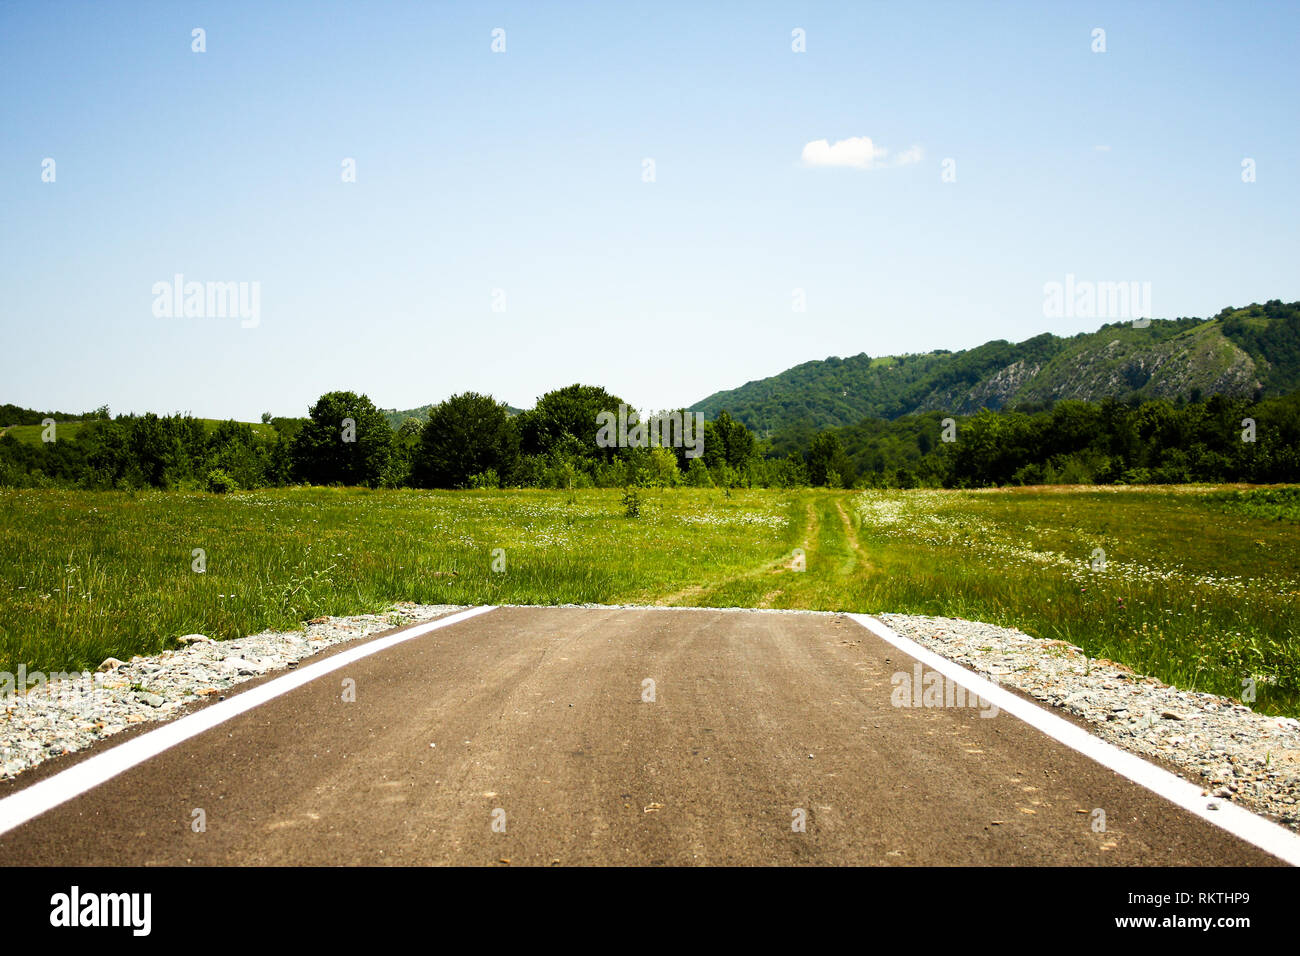 Strada asfaltata che termina bruscamente nel mezzo di una verde pianura con alcuni sentieri segnalati in anticipo Foto Stock